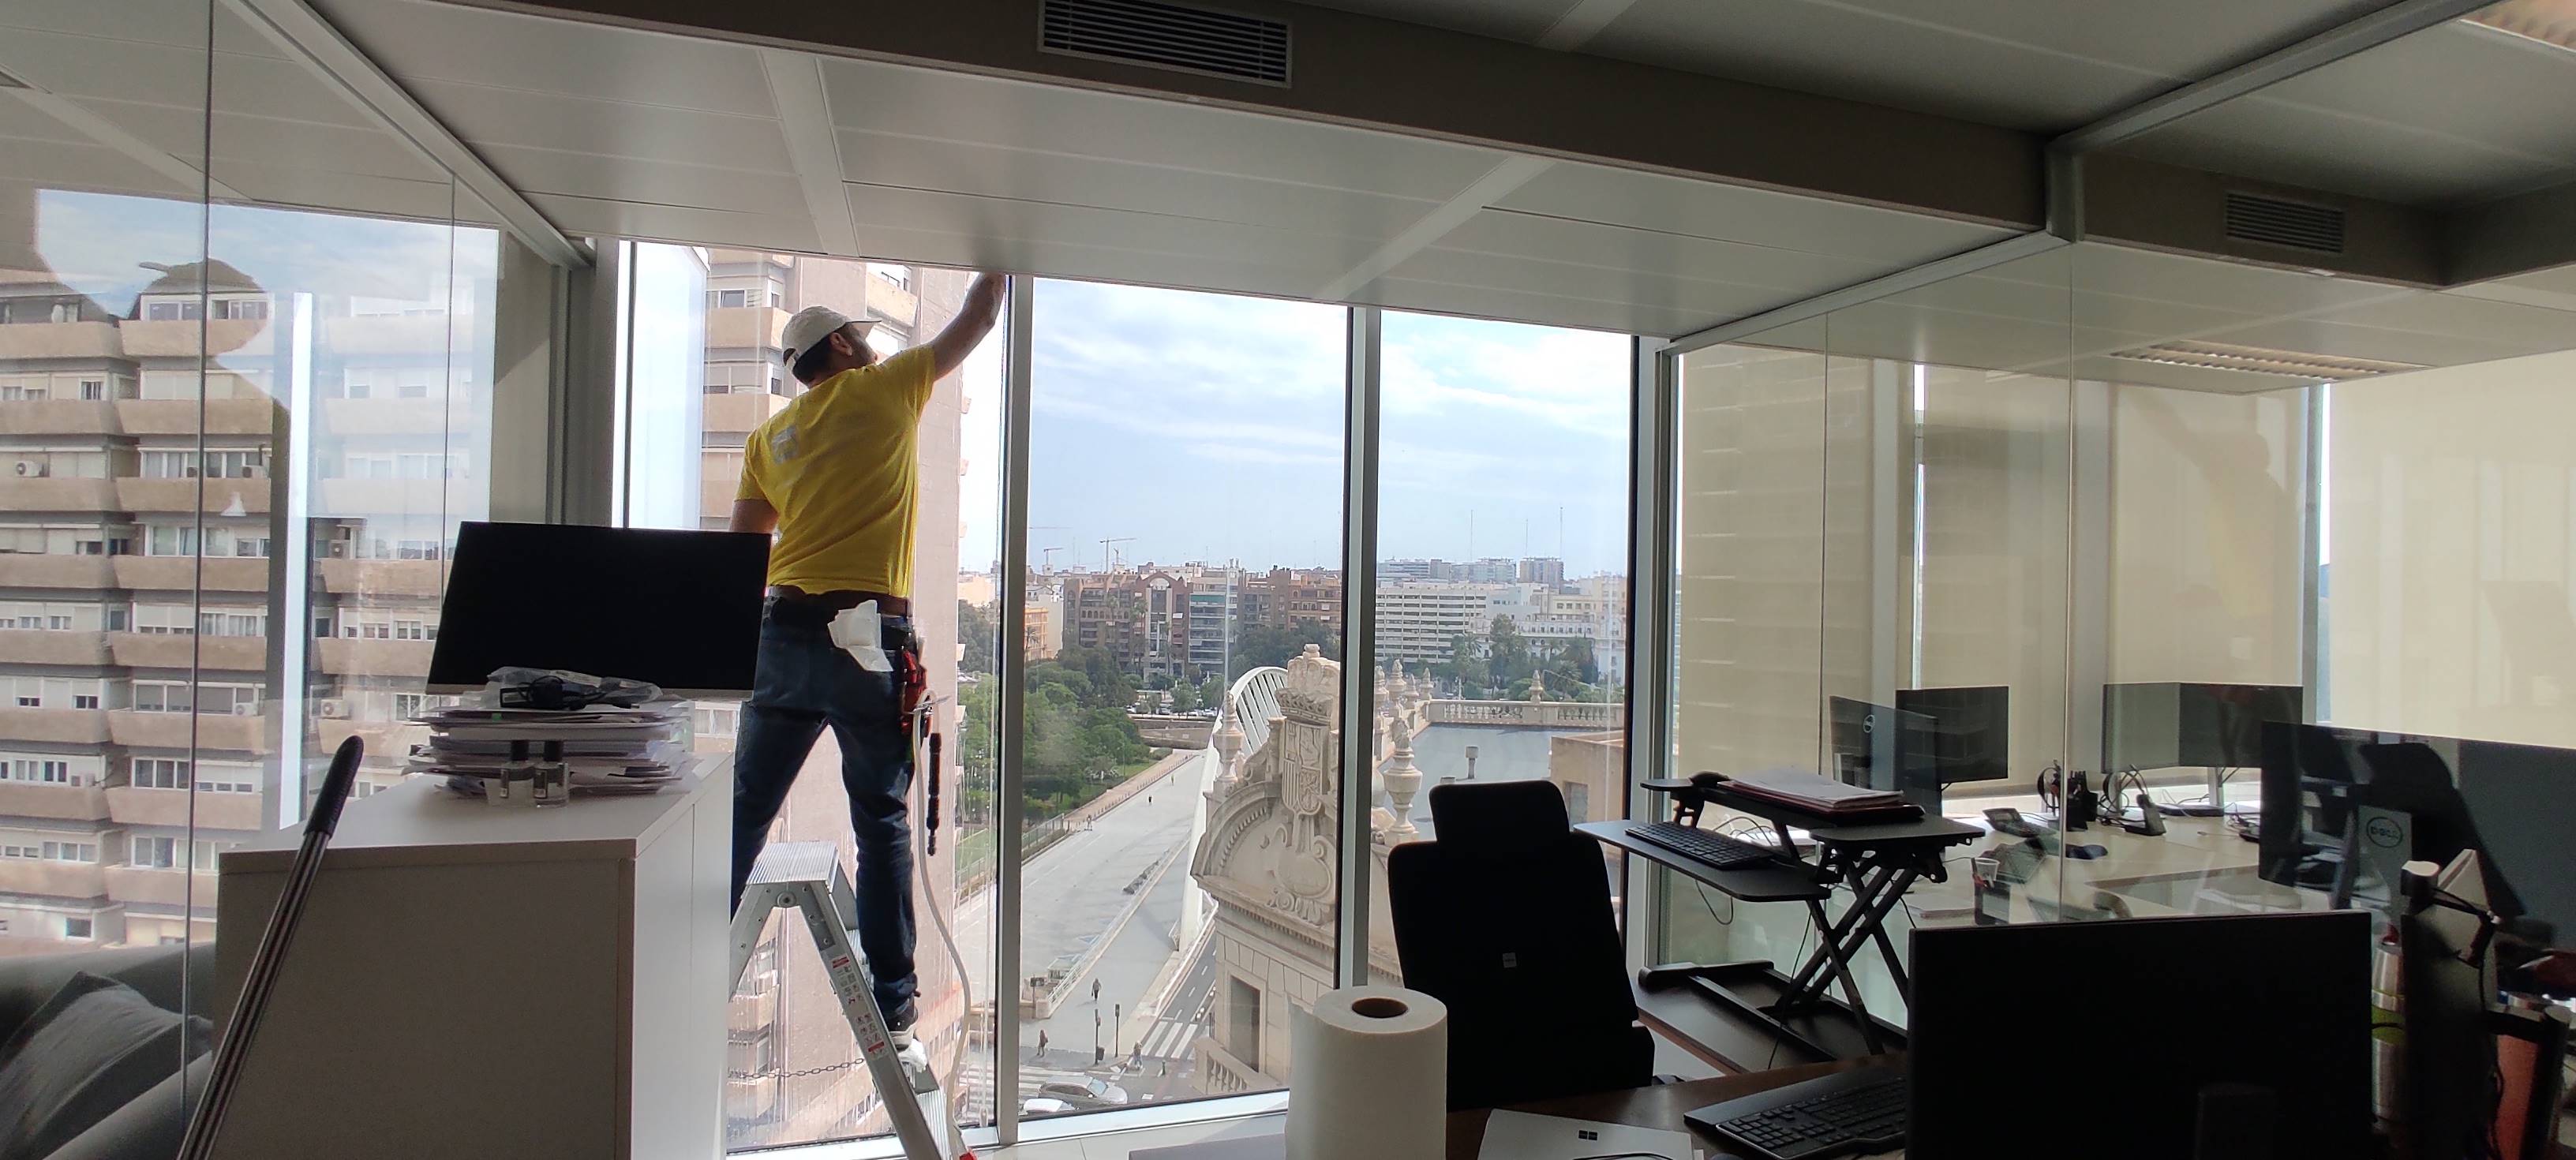 Controla el Calor con Estilo: Instalación de Láminas Solares para Vidrios en Valencia